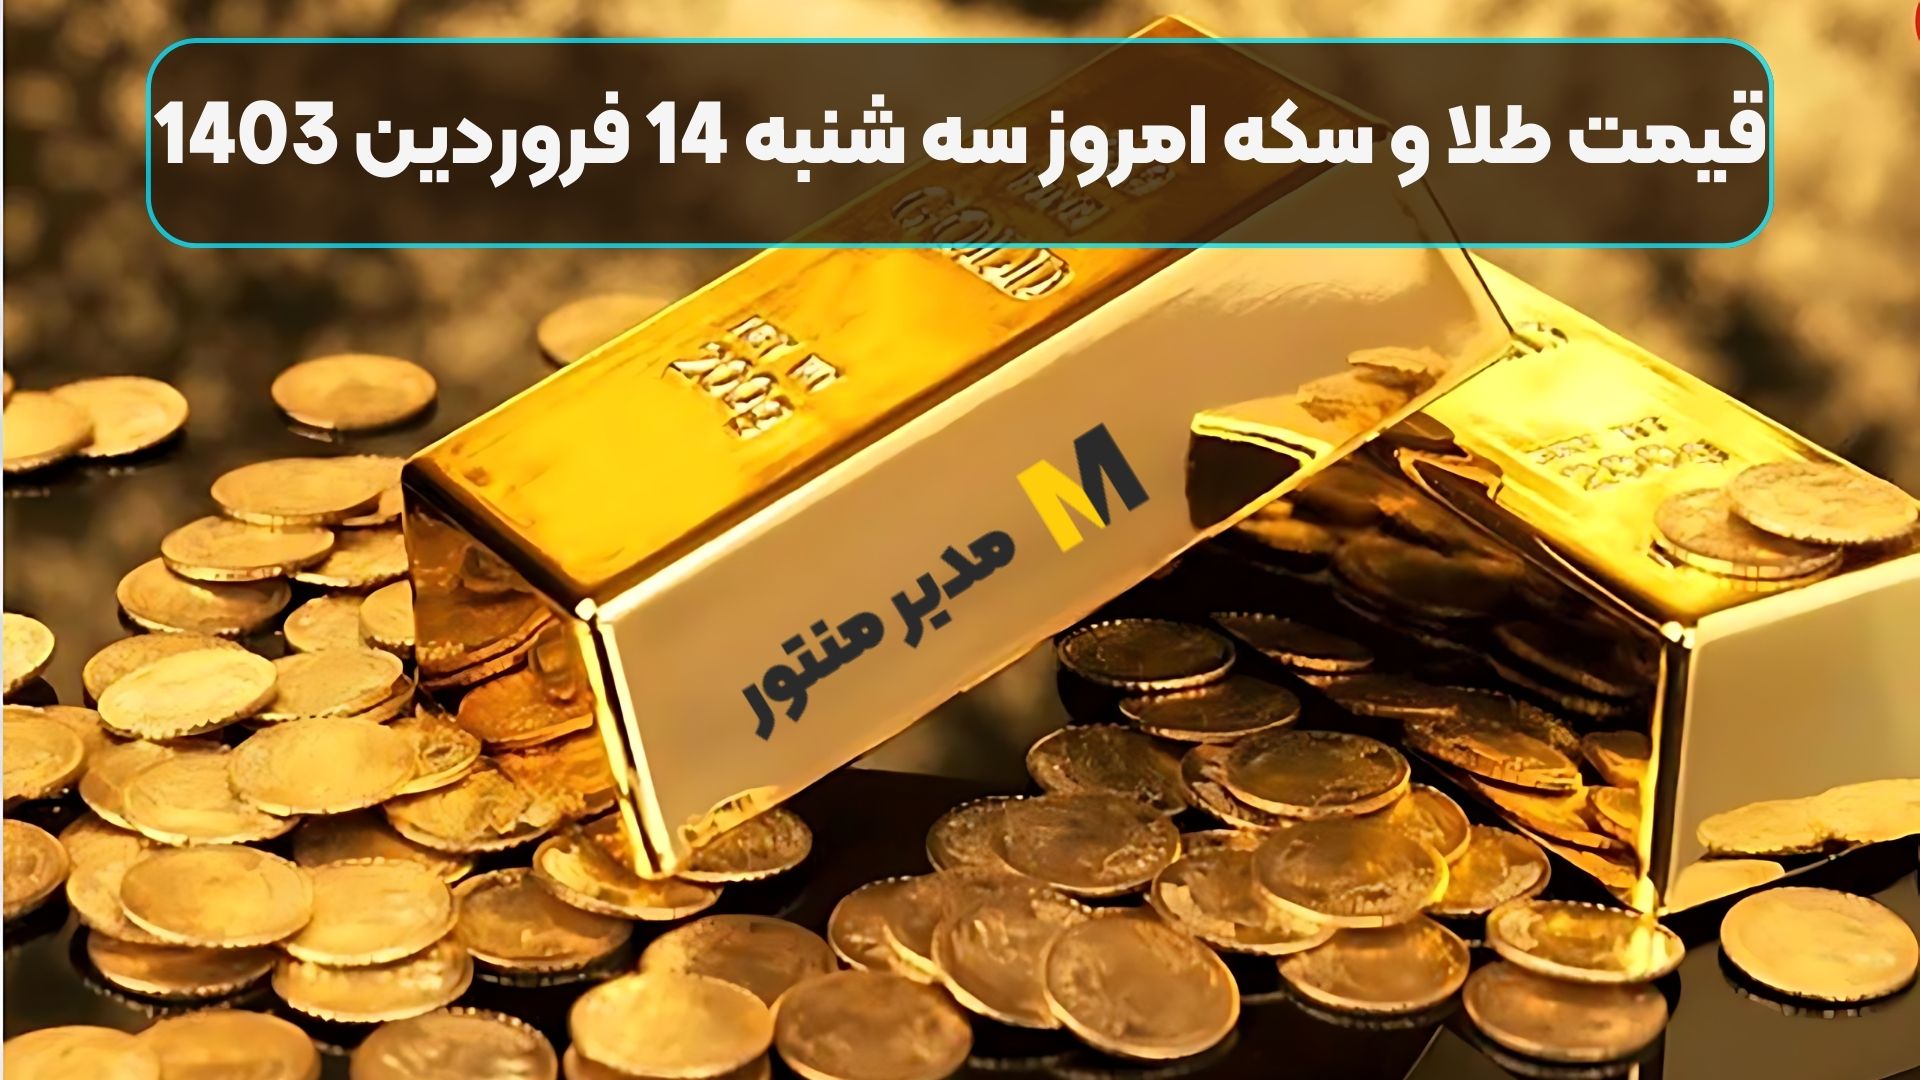 قیمت طلا و سکه امروز سه شنبه 14 فروردین 1403